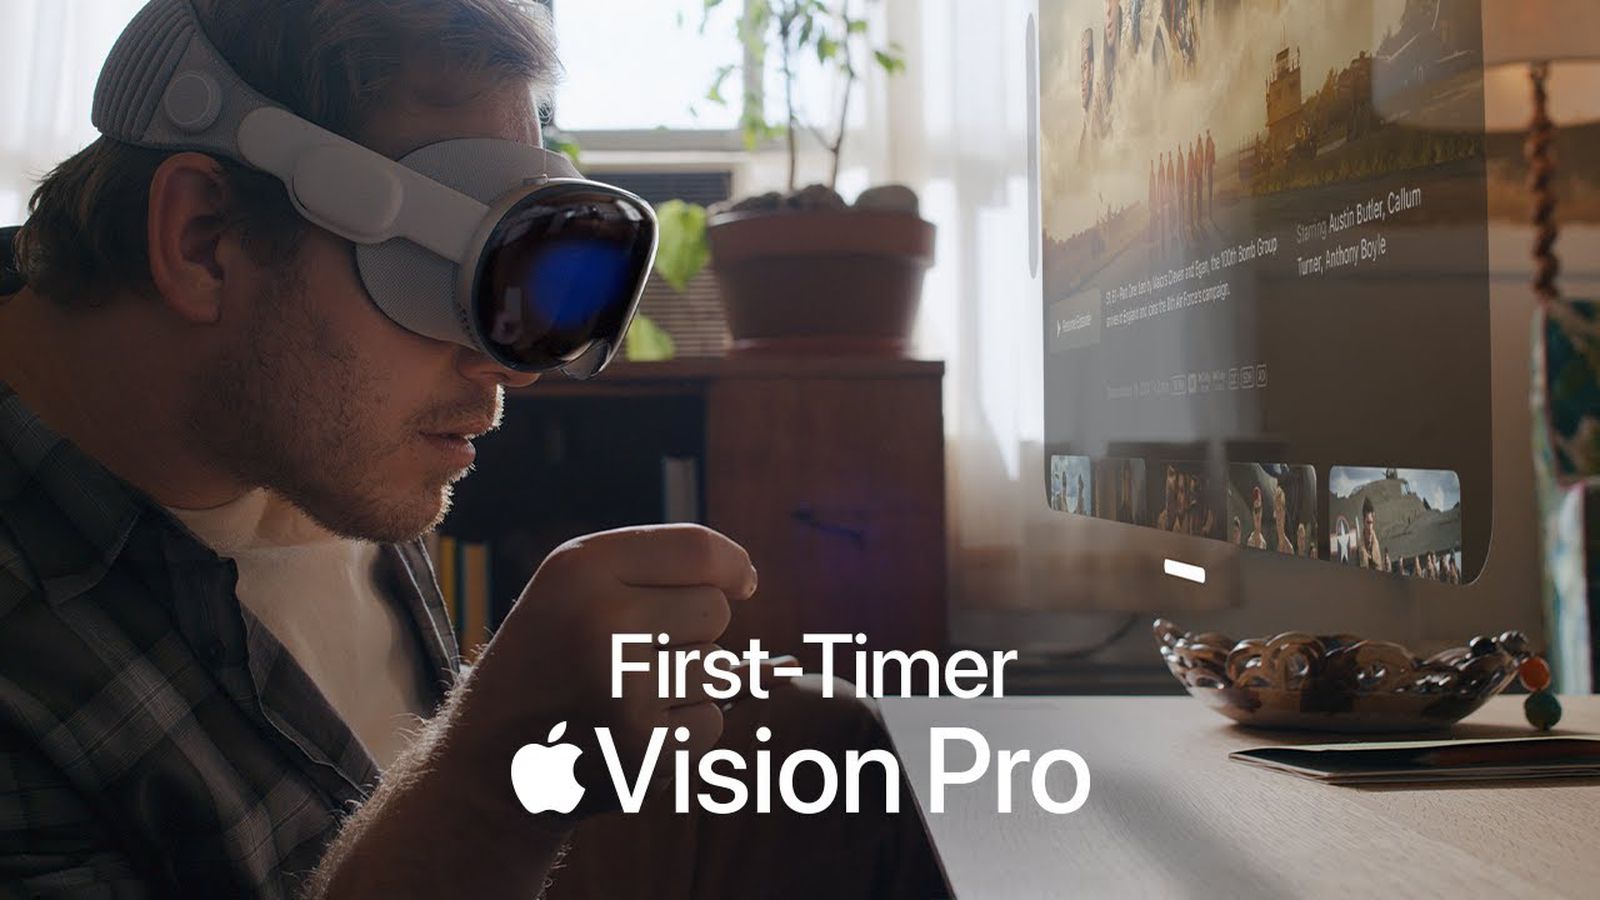 اپل تبلیغ جدید “First-Timer” را برای Vision Pro به اشتراک می گذارد